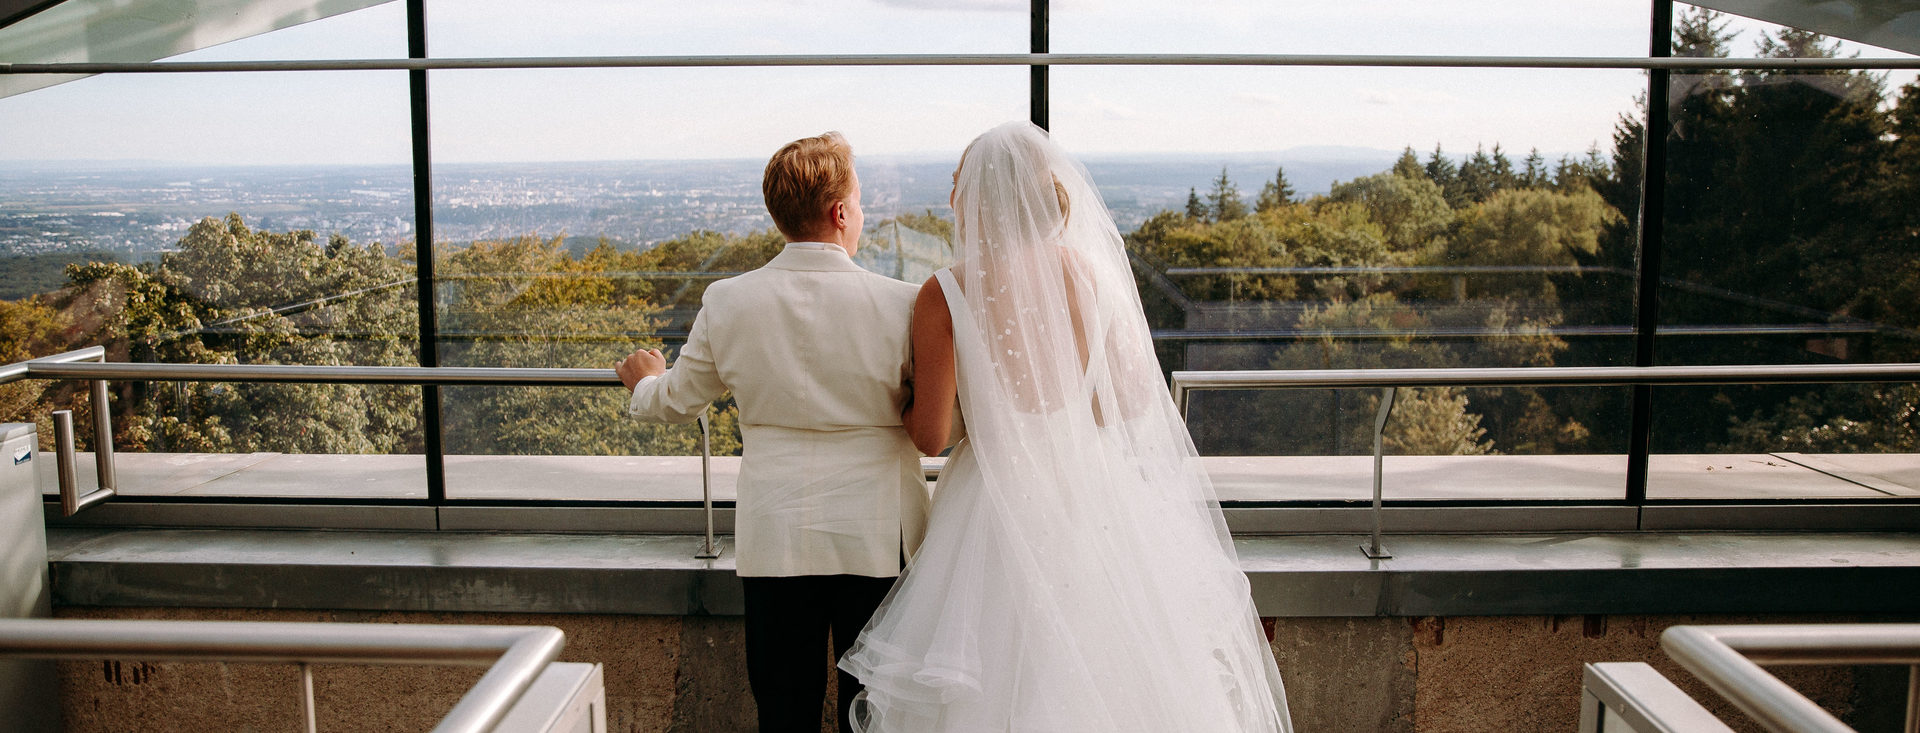 Hochzeitspaar auf einer Aussichtsplatform